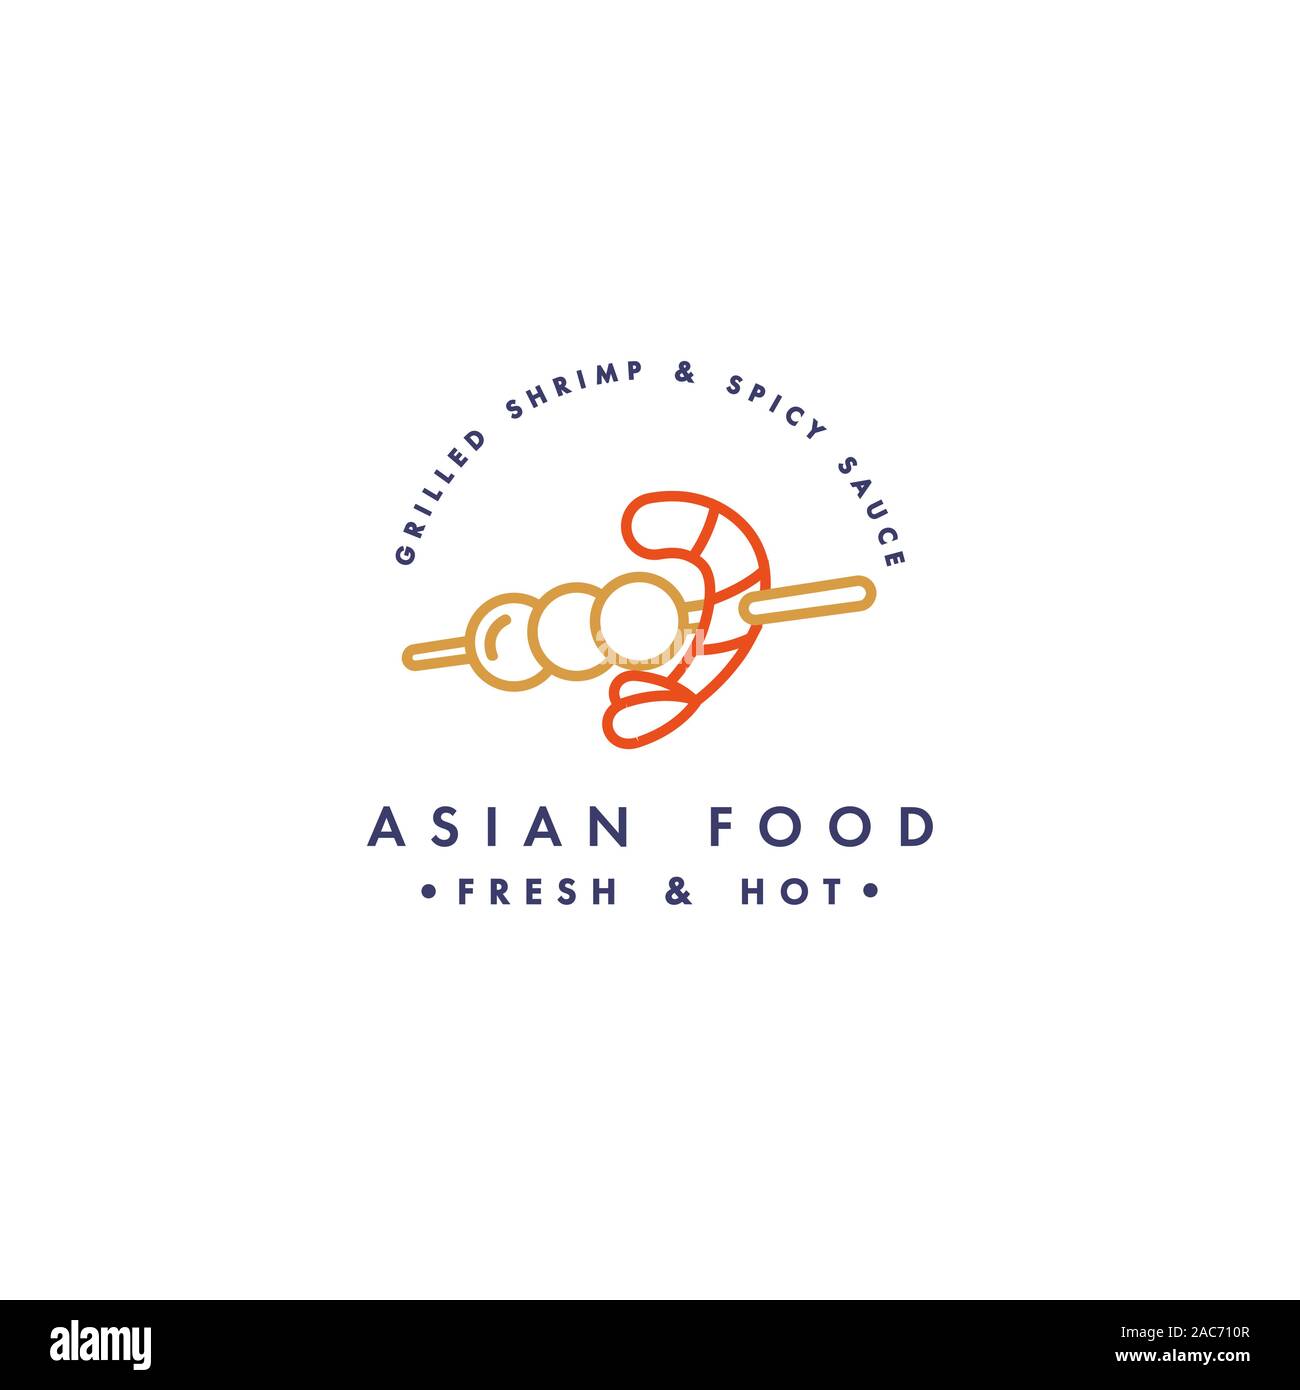 Vektor Logo Design Template und Emblem oder Logo. Asiatische Lebensmittel - asain Kebab mit Garnelen. Lineare Logos, Gold und Rot. Stock Vektor